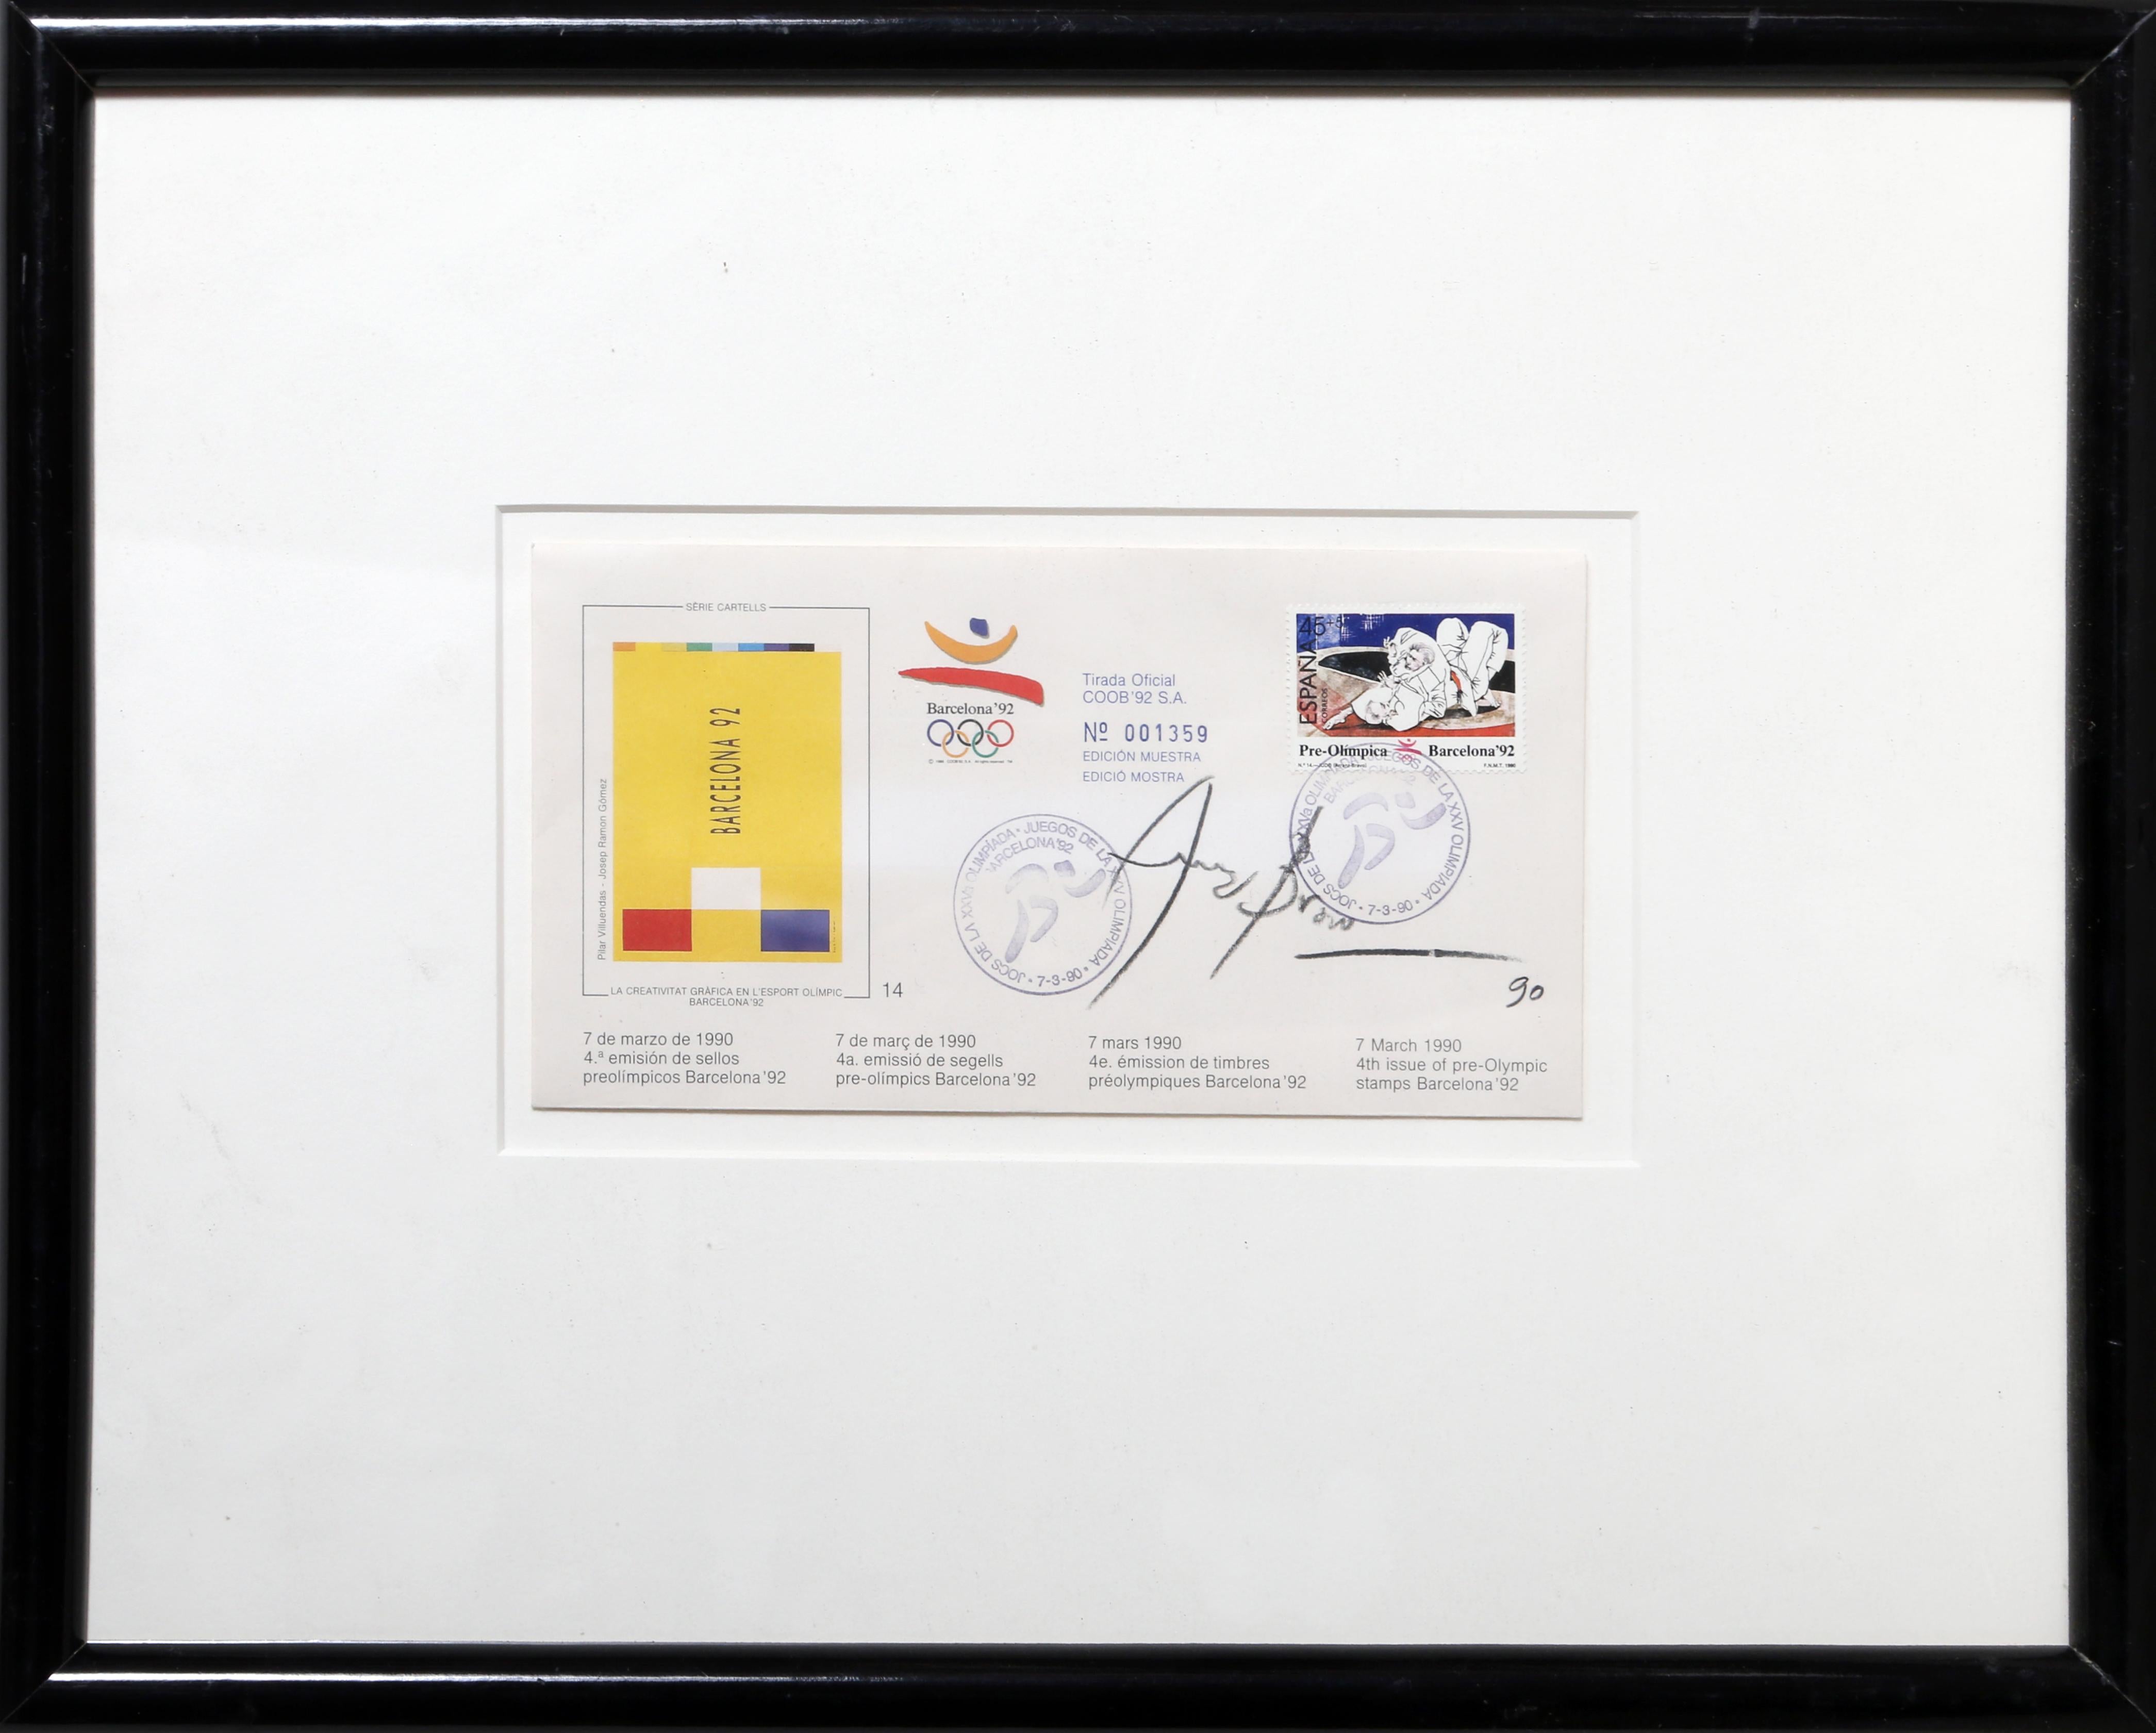 Vorolympische Briefmarken, die der spanische Künstler Eduardo Arranz Bravo für die Olympischen Spiele '92 in Barcelona entworfen hat.

Barcelona Vorolympische Briefmarke 3
Eduardo Arranz-Bravo, Spanier (1941)
Datum: 1990
Mischtechnik auf Papier,